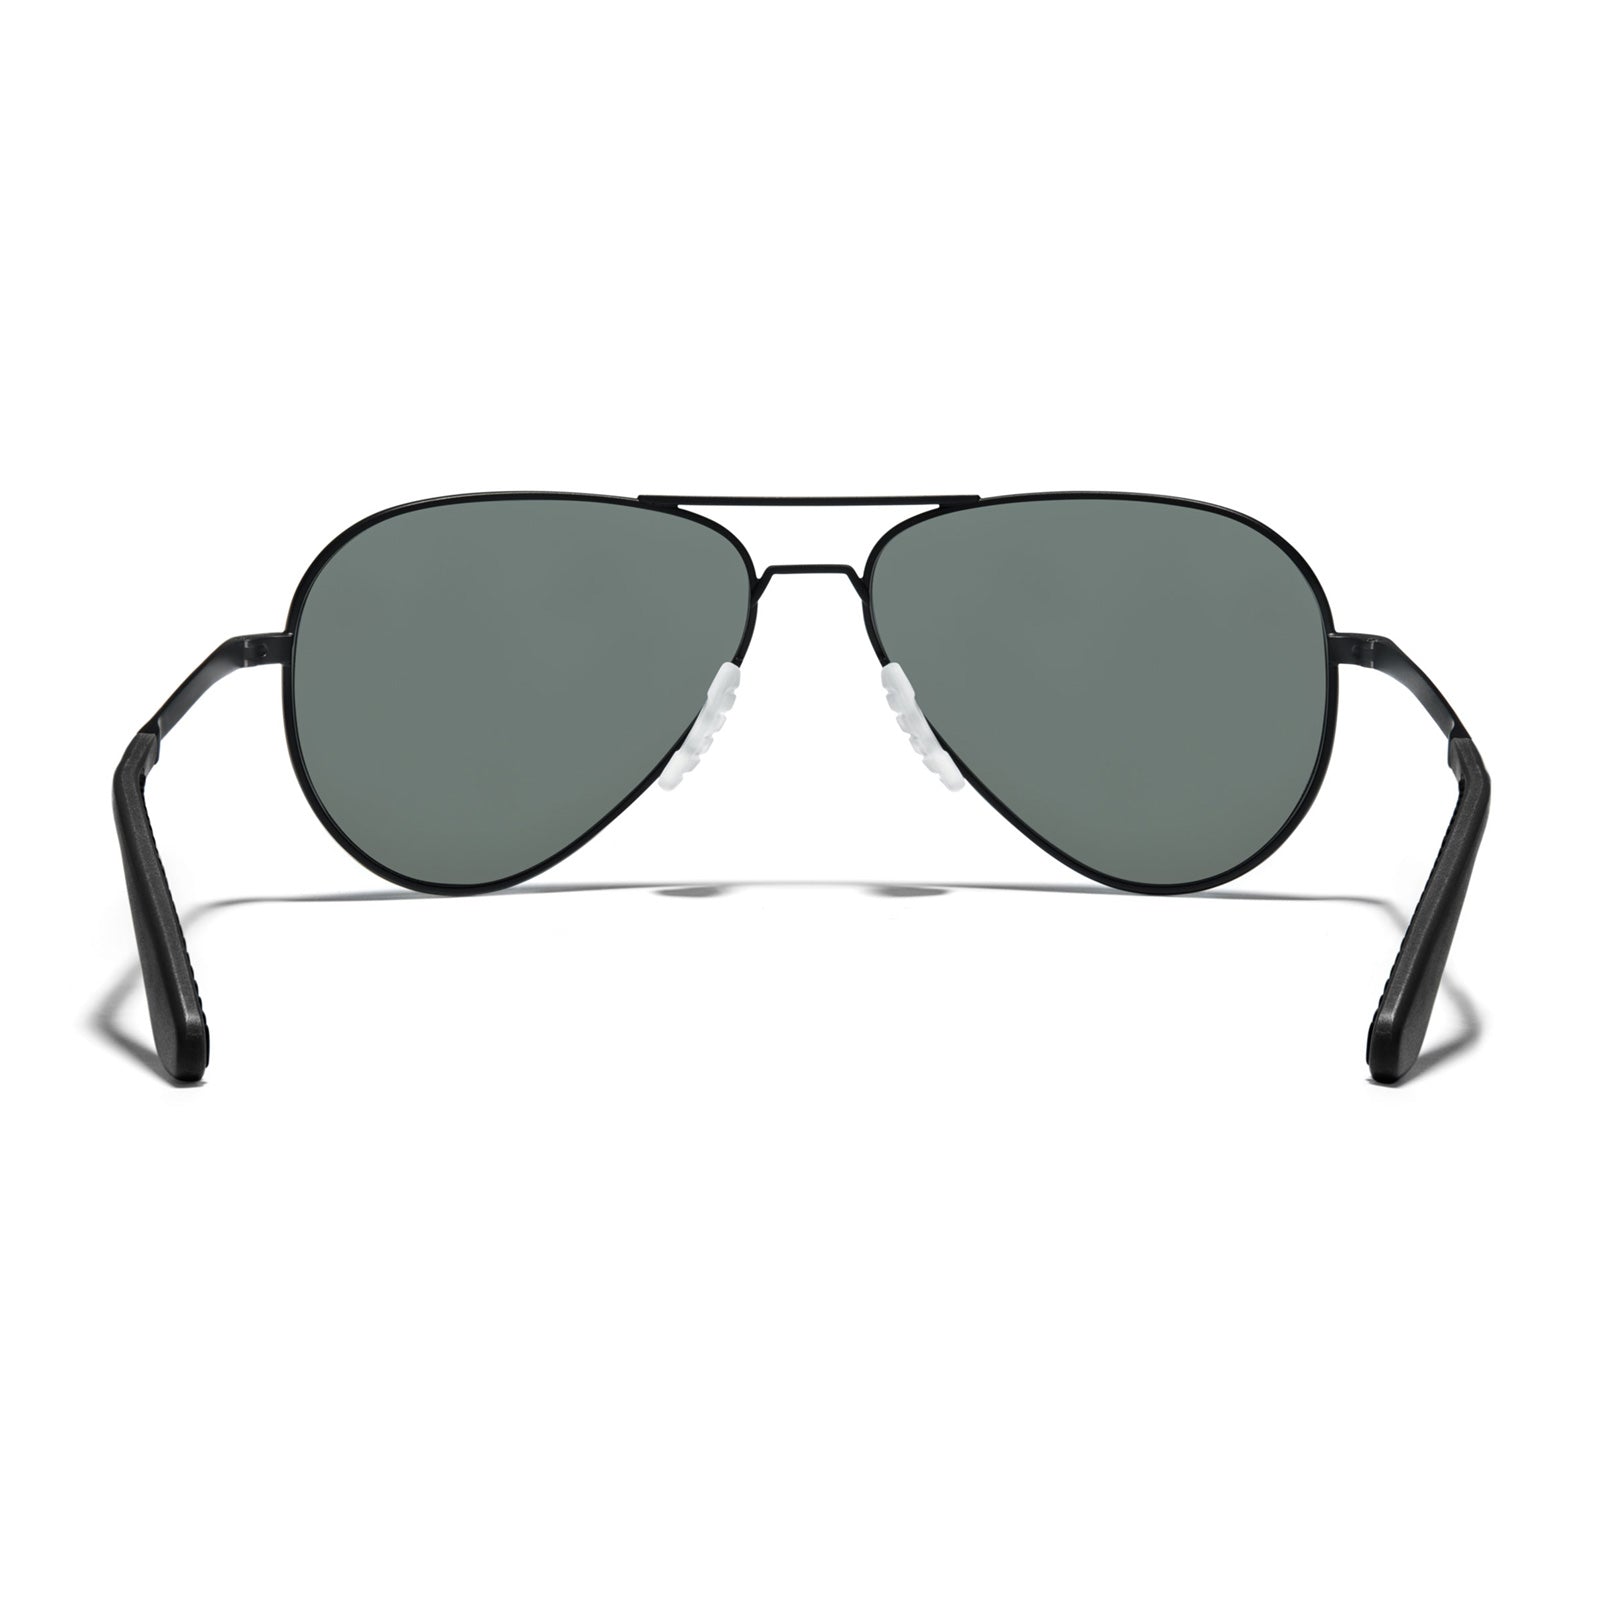 Aviator Sunglasses - Sports Sunglasses | ROKA